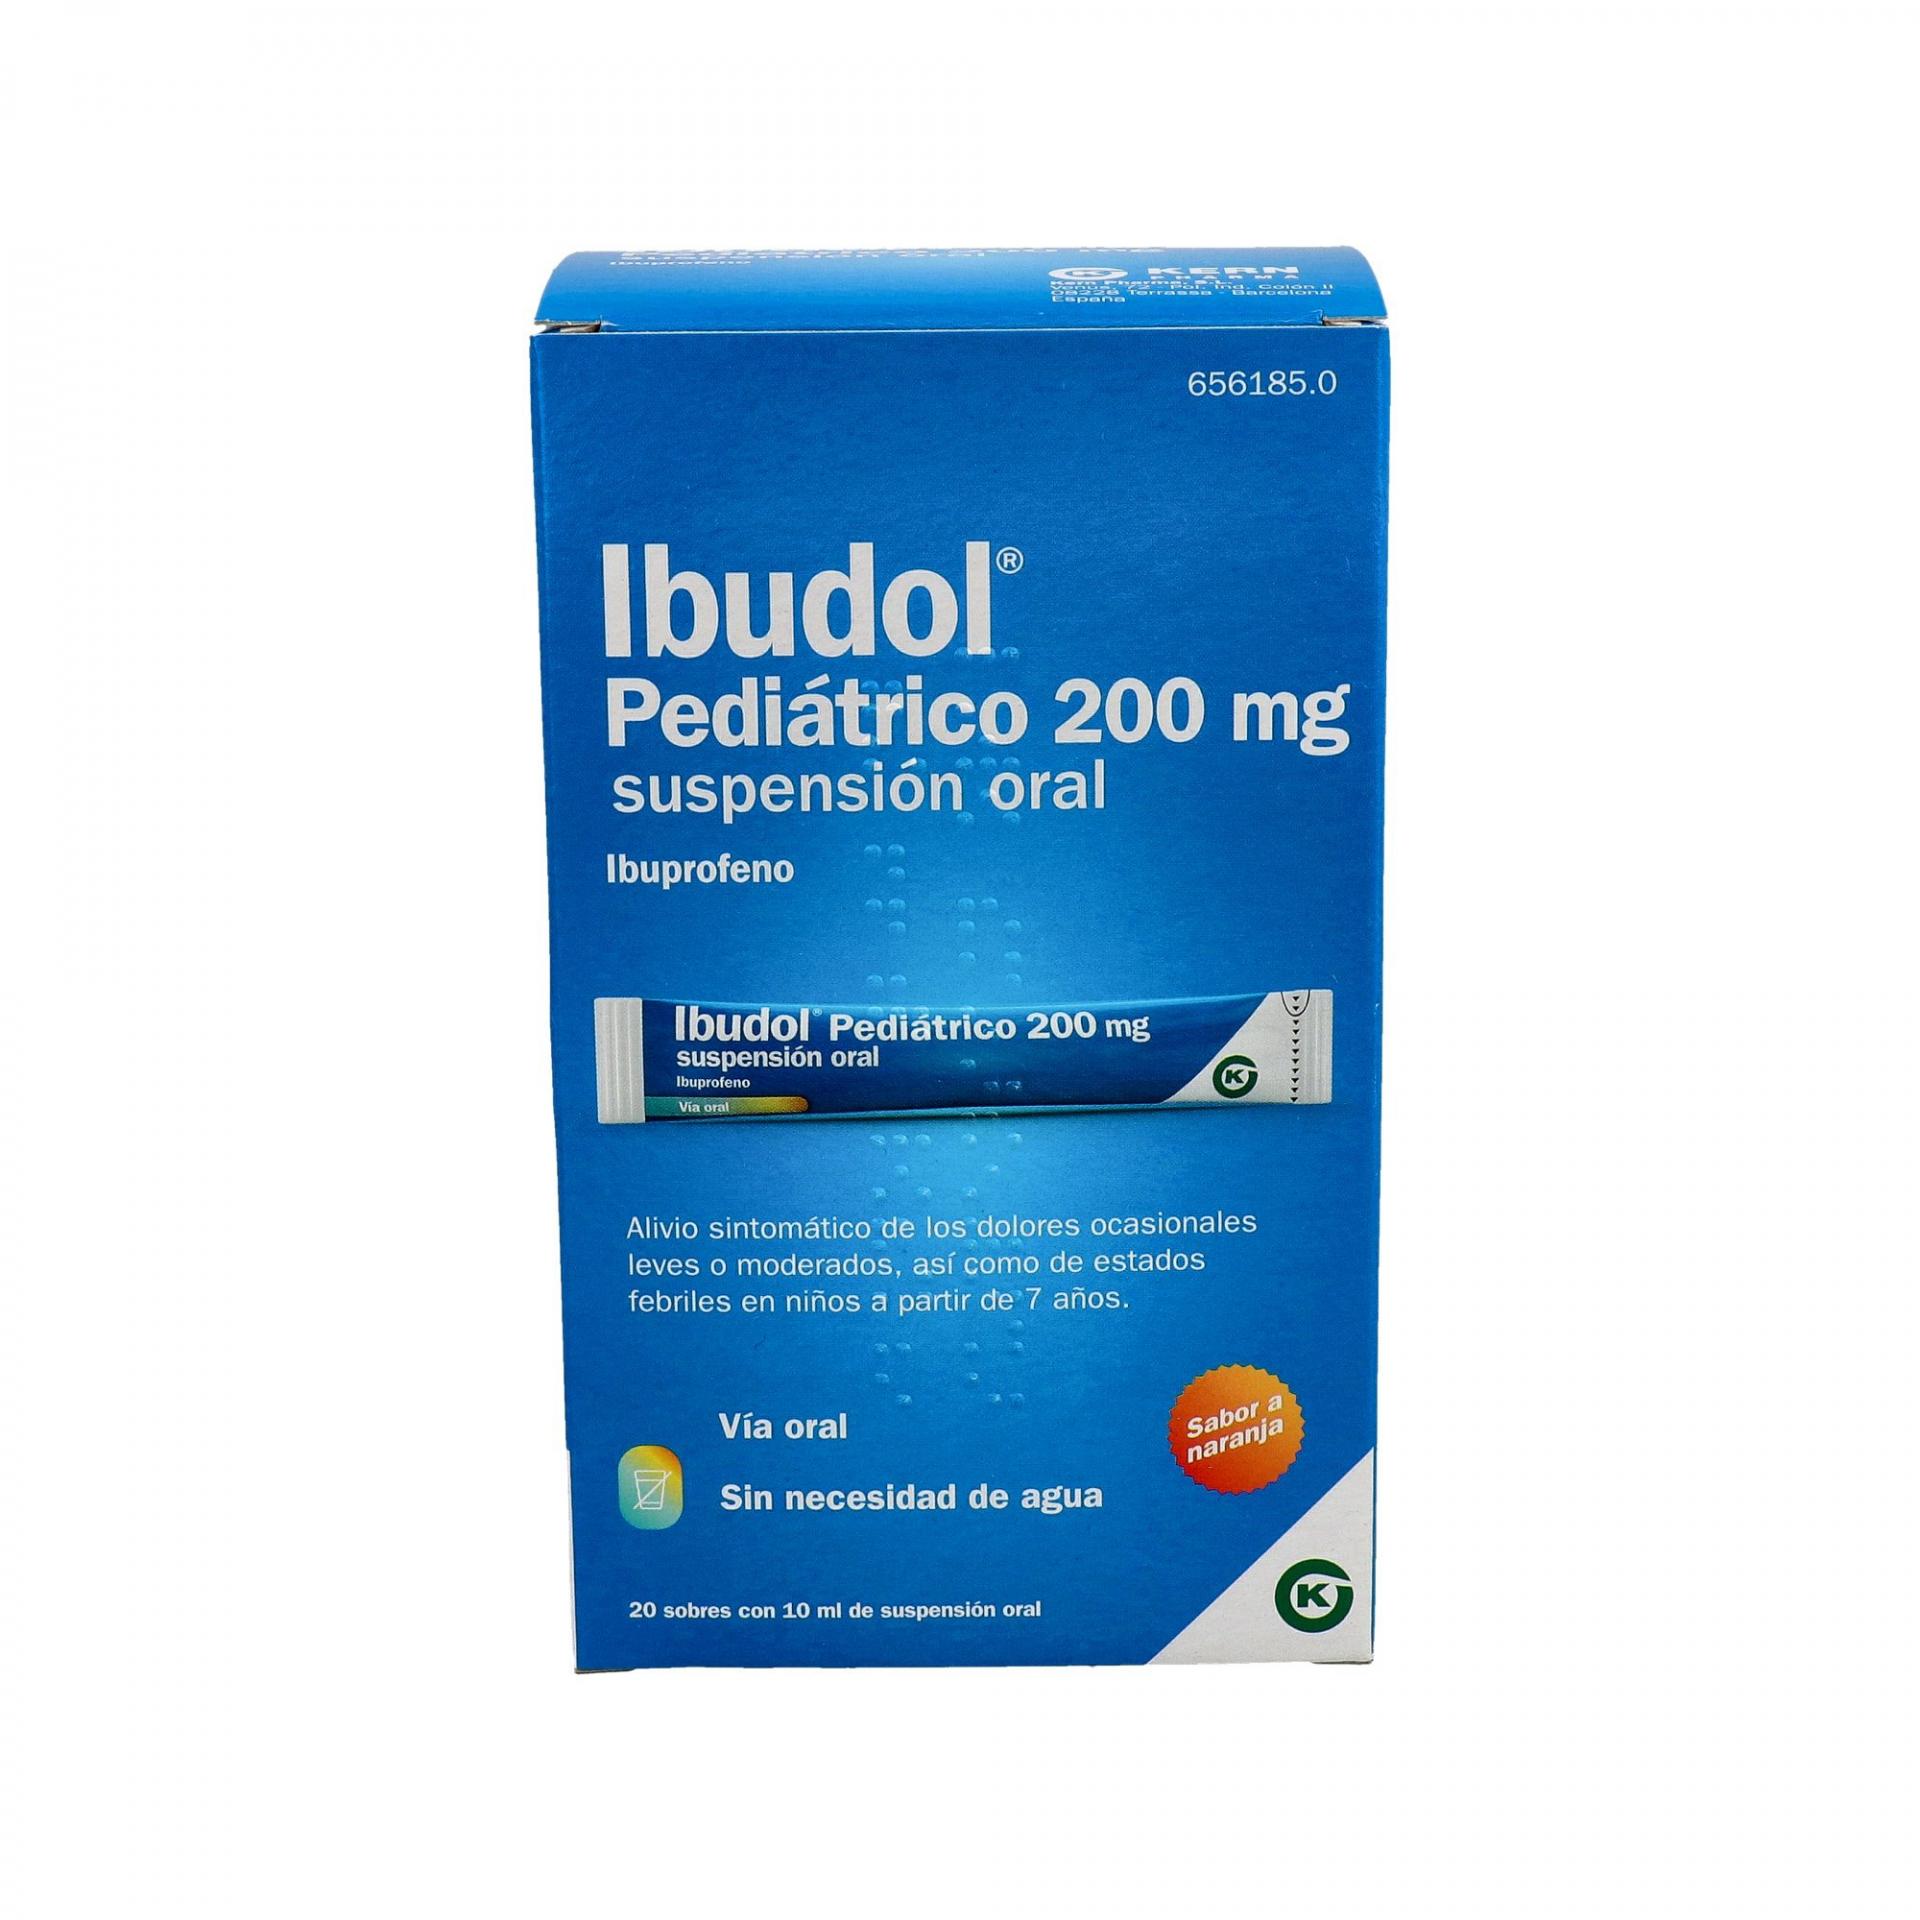 Ibudol pediátrico 200 mg suspensión oral